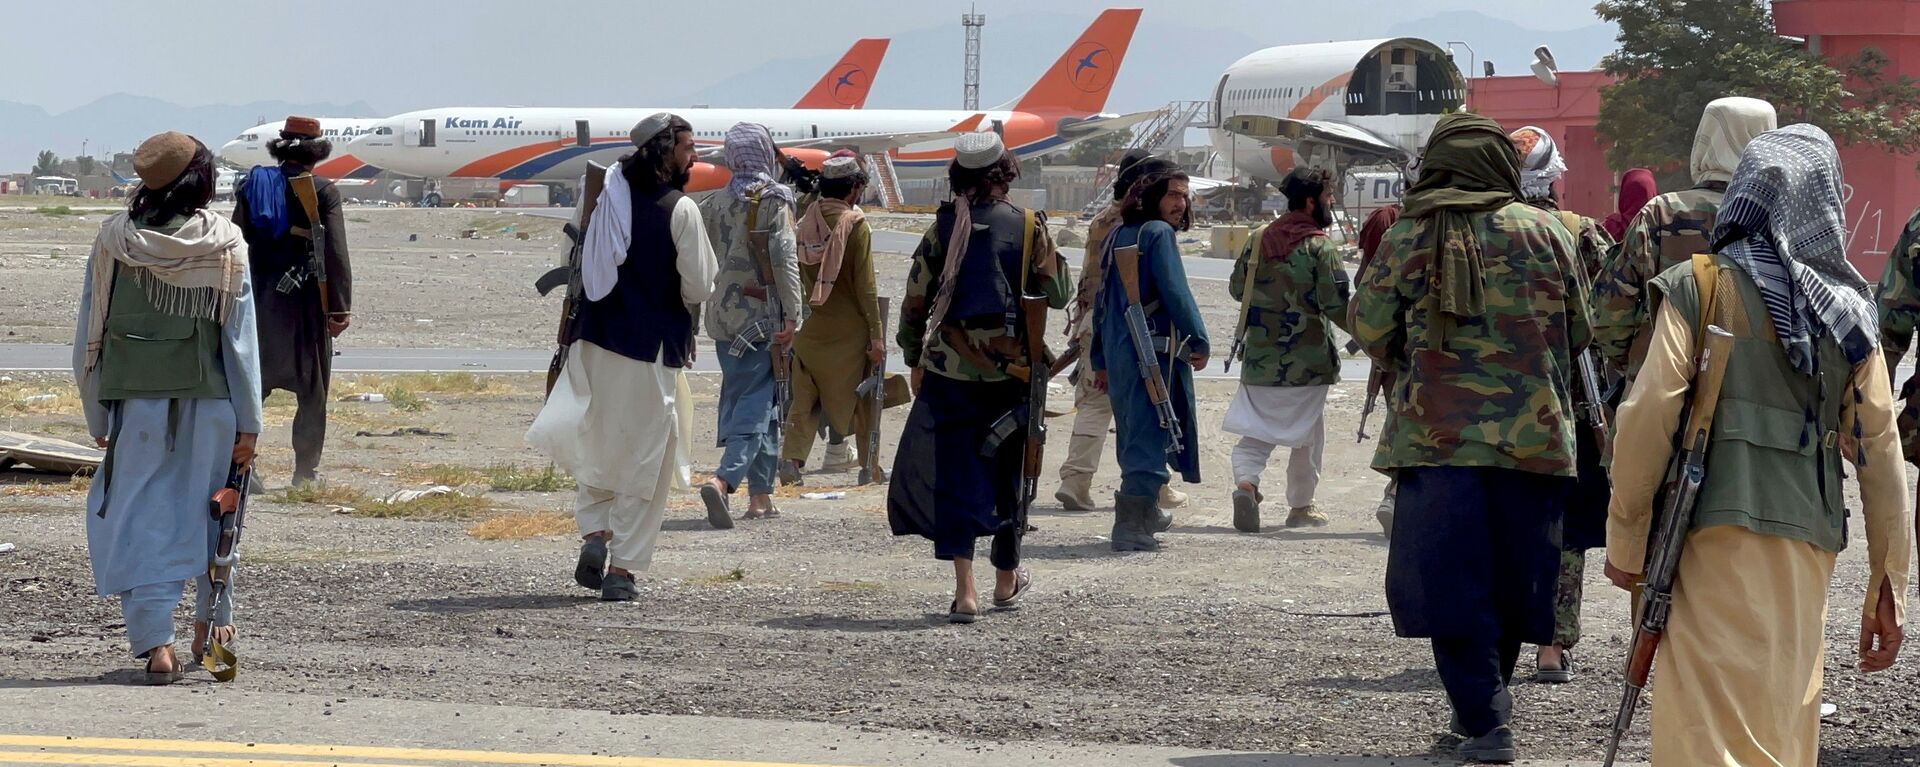 عناصر حركة طالبان تسيطر على مطار حامد كرزاي الدولي في كابول، أفغانستان 31 أغسطس 2021 - سبوتنيك عربي, 1920, 12.09.2021